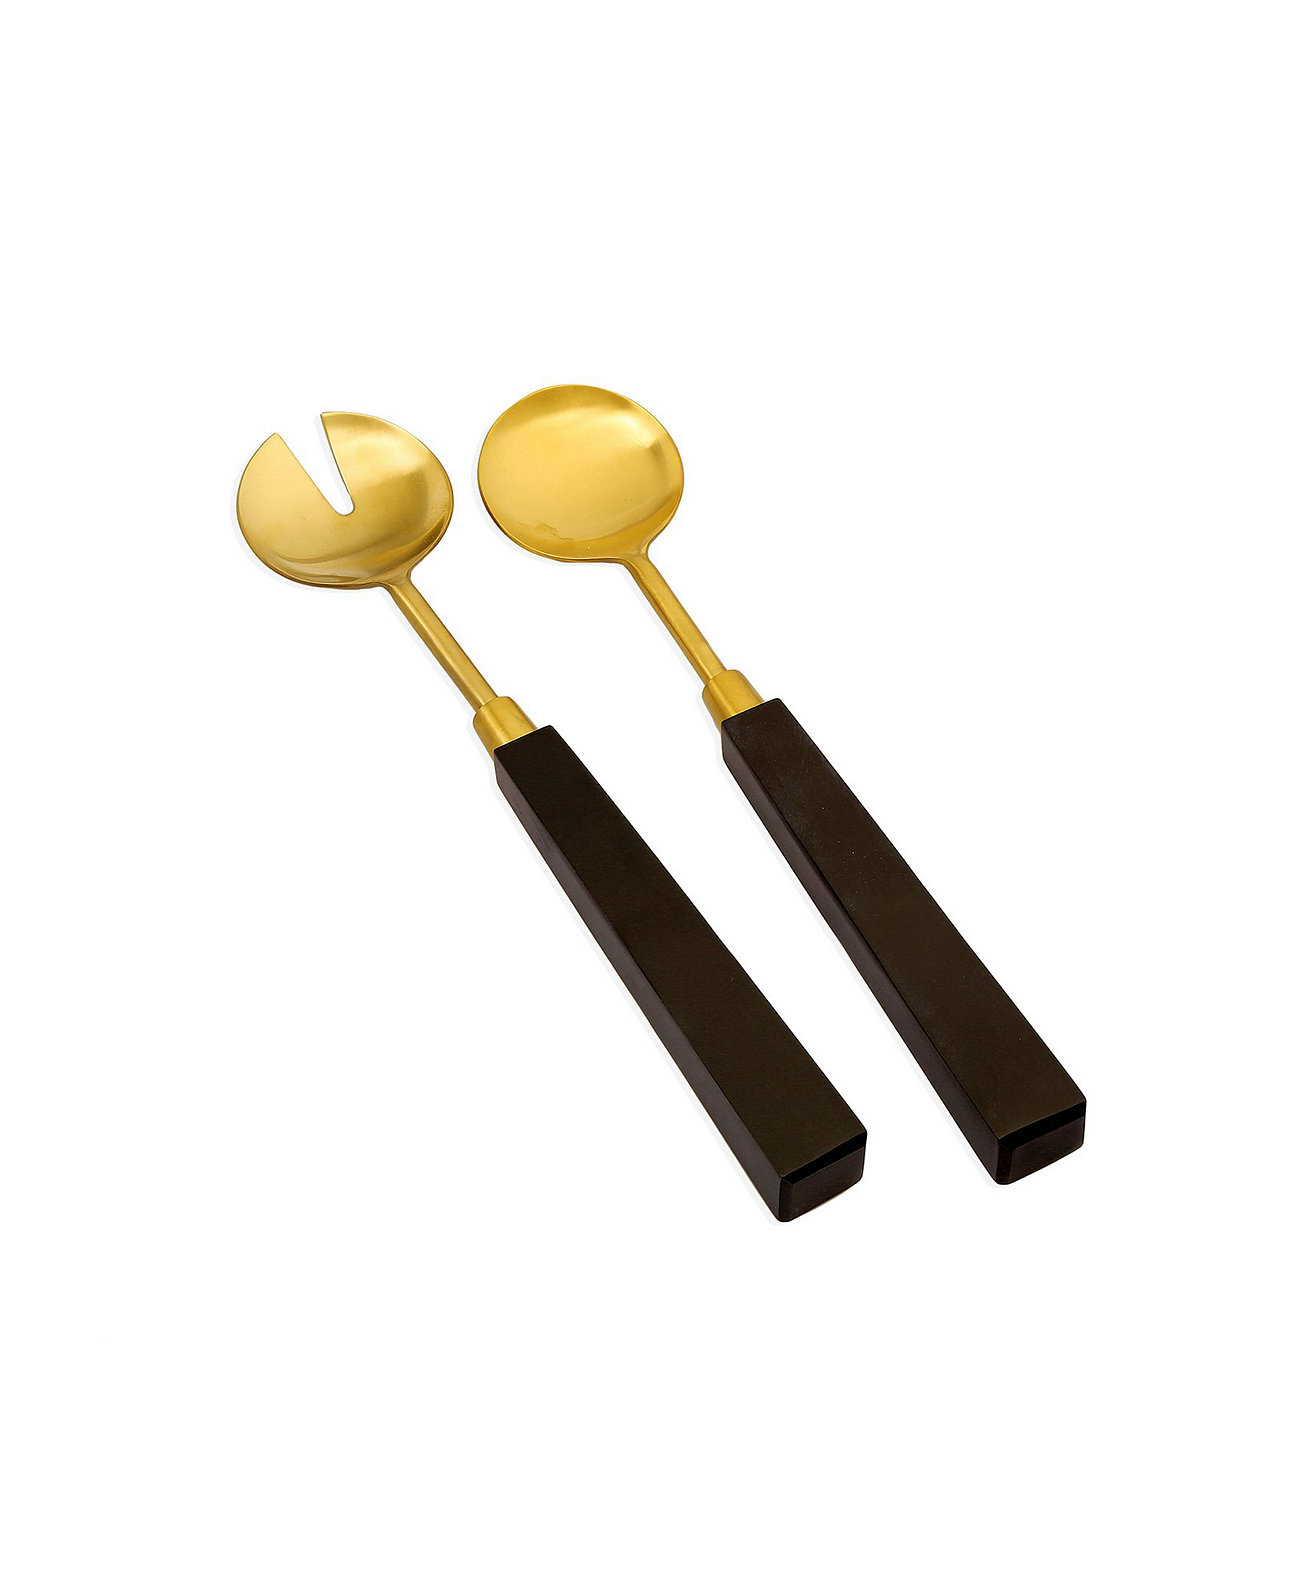 Набор из 2 сервировок для салатов золотистого цвета с ручками из черного камня Classic Touch